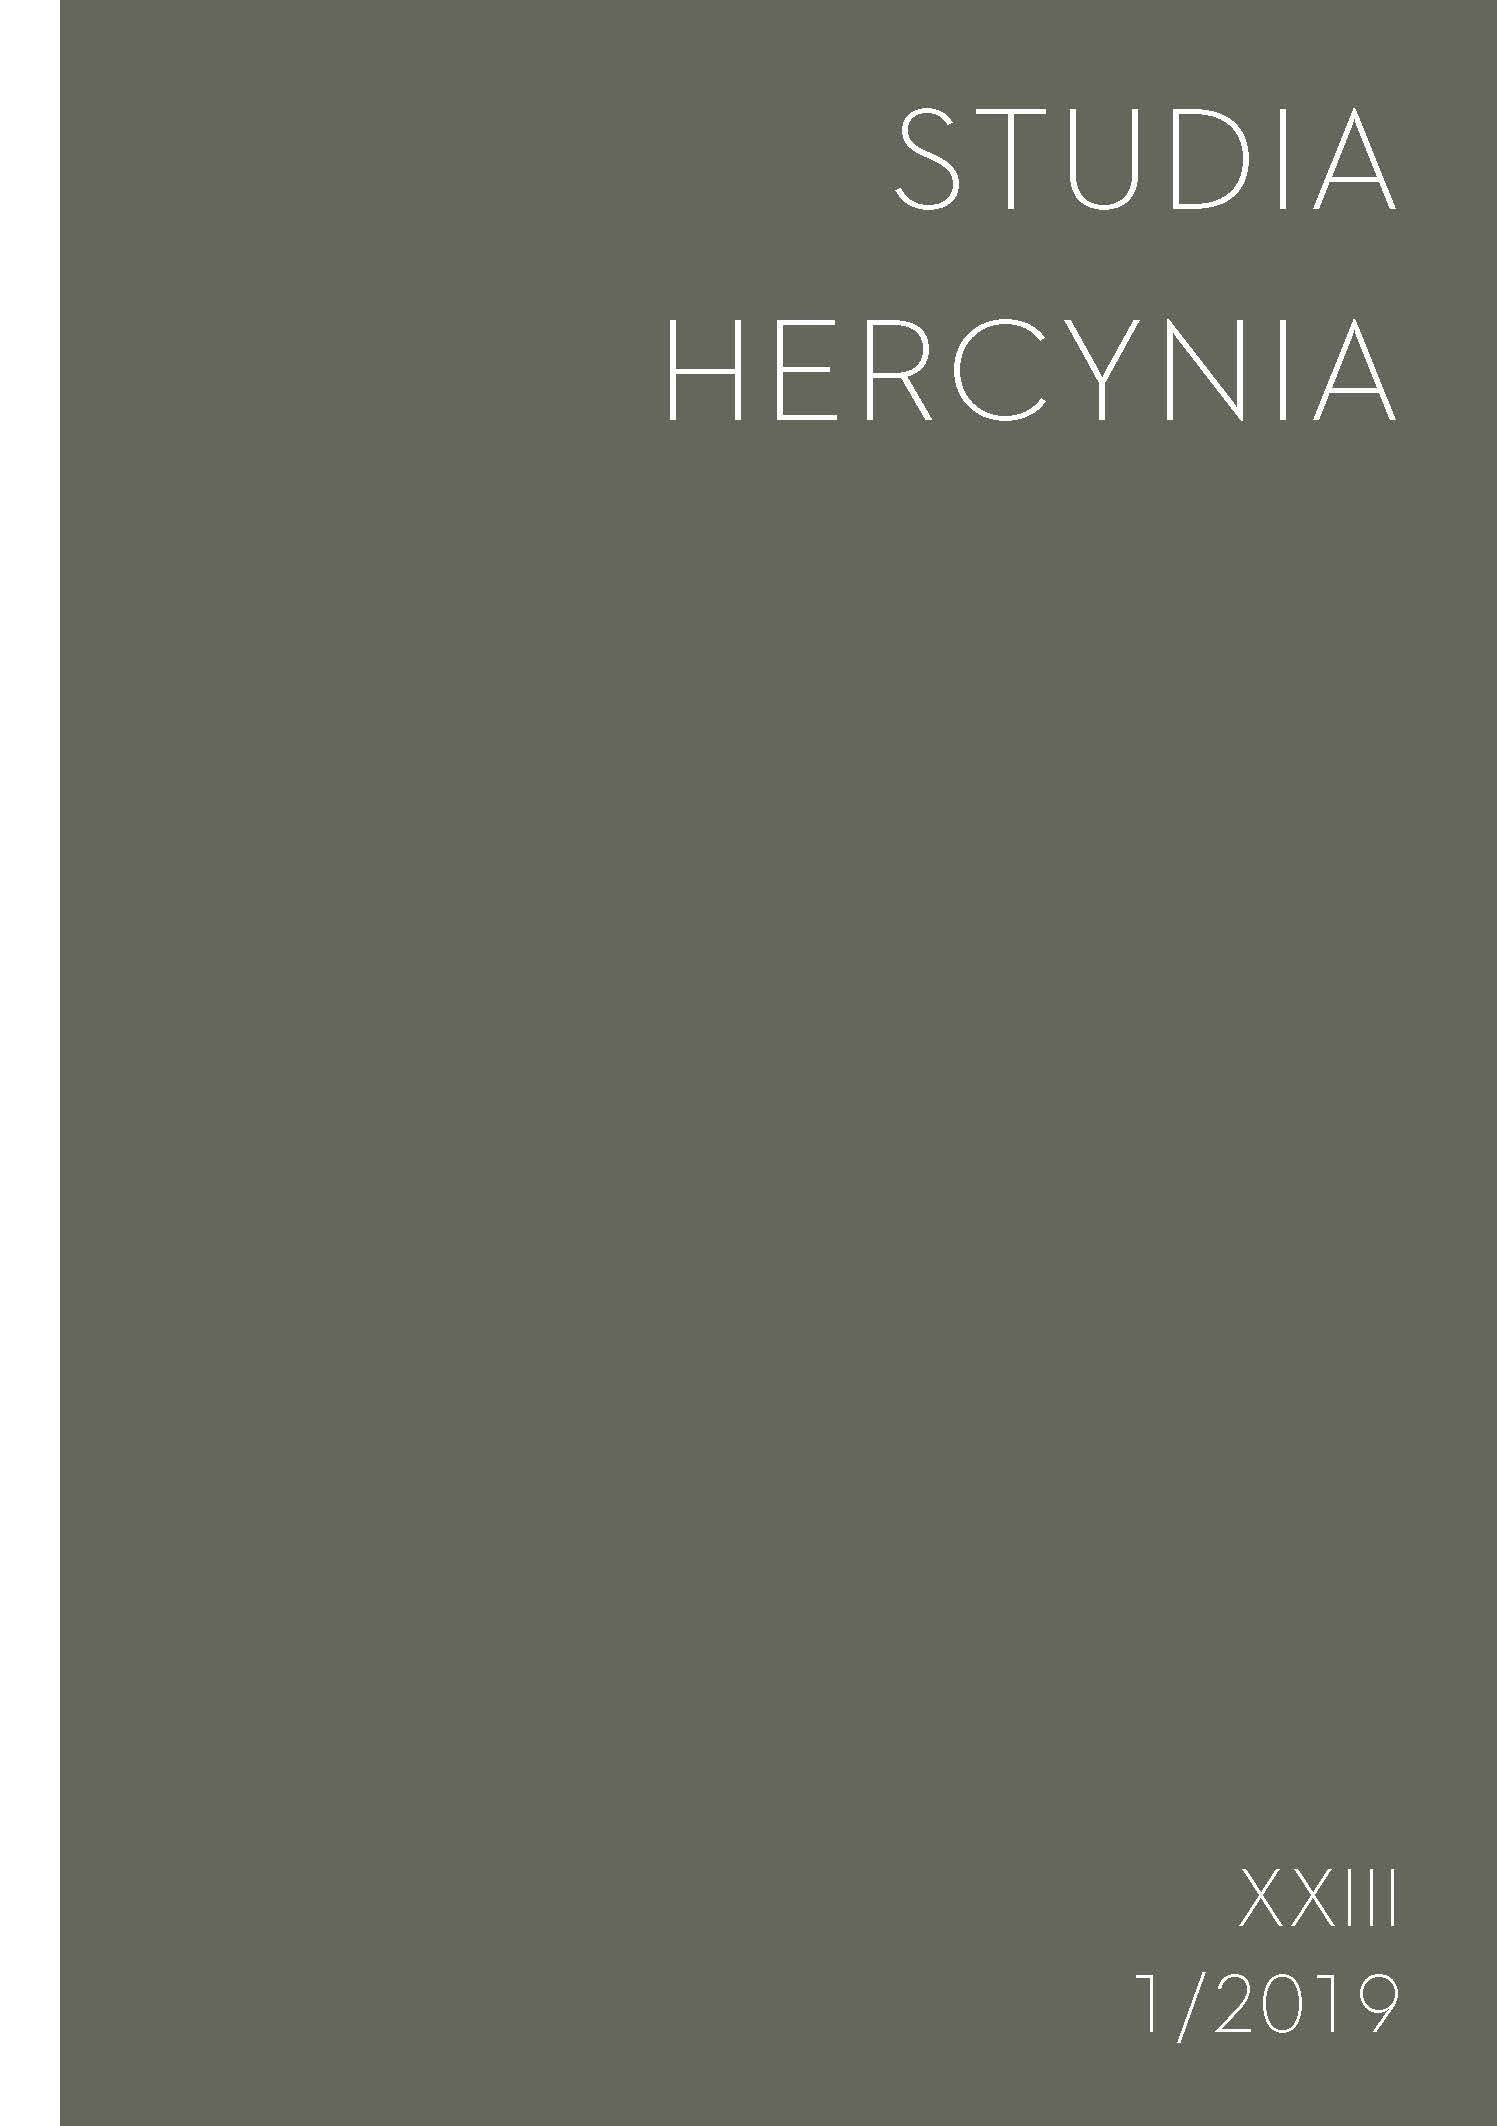 Studia Hercynia 23/1, 2019